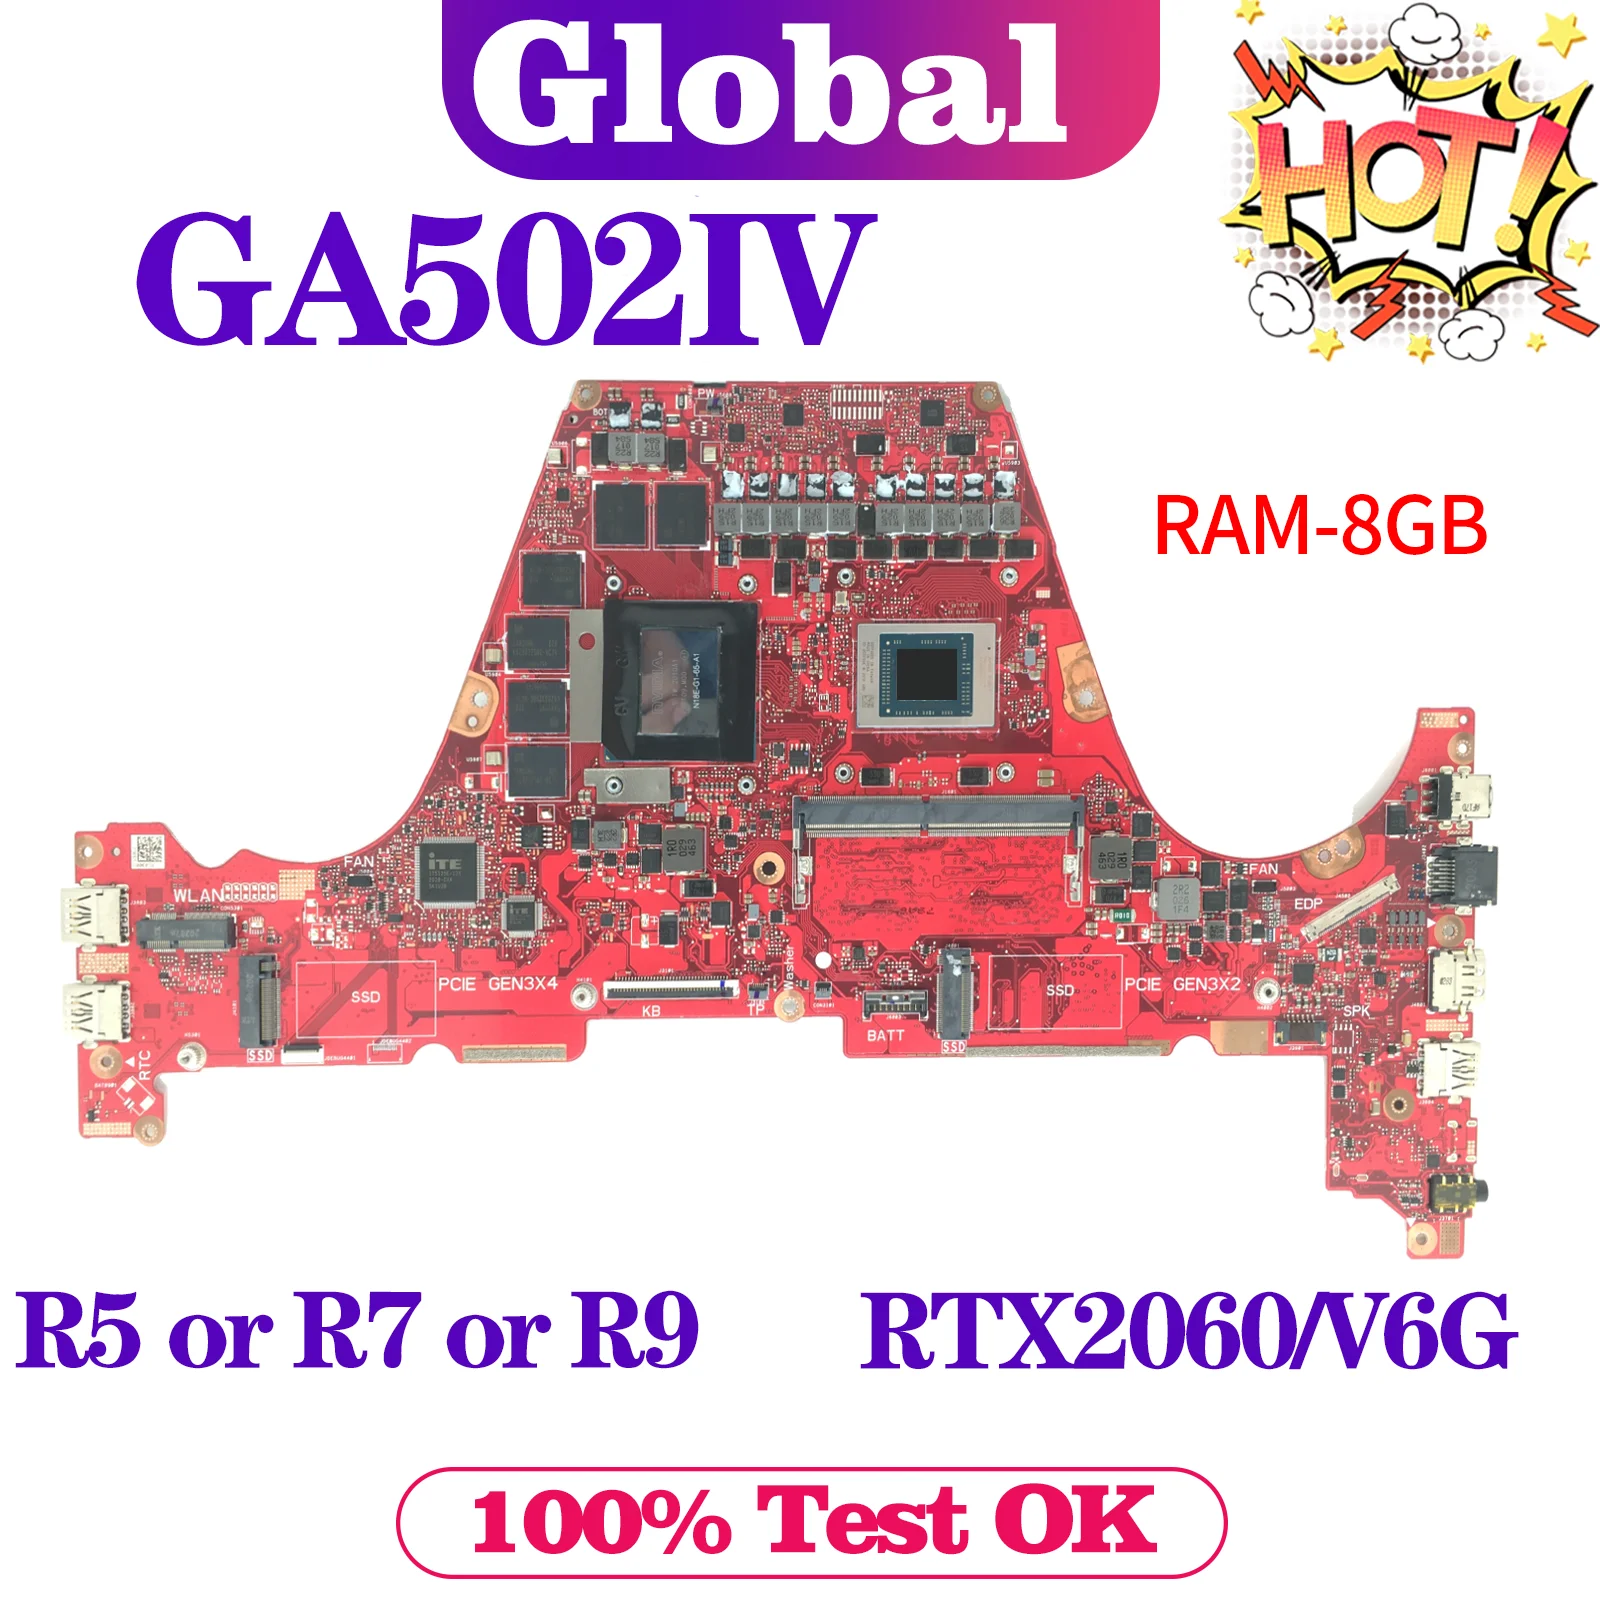 

KEFU Mainboard For ASUS GA502IV GA502IU GA502 GA502DU GA502I Laptop Motherboard R5 R7 R9 GTX1660Ti/V6G RTX2060/6G RAM/8GB